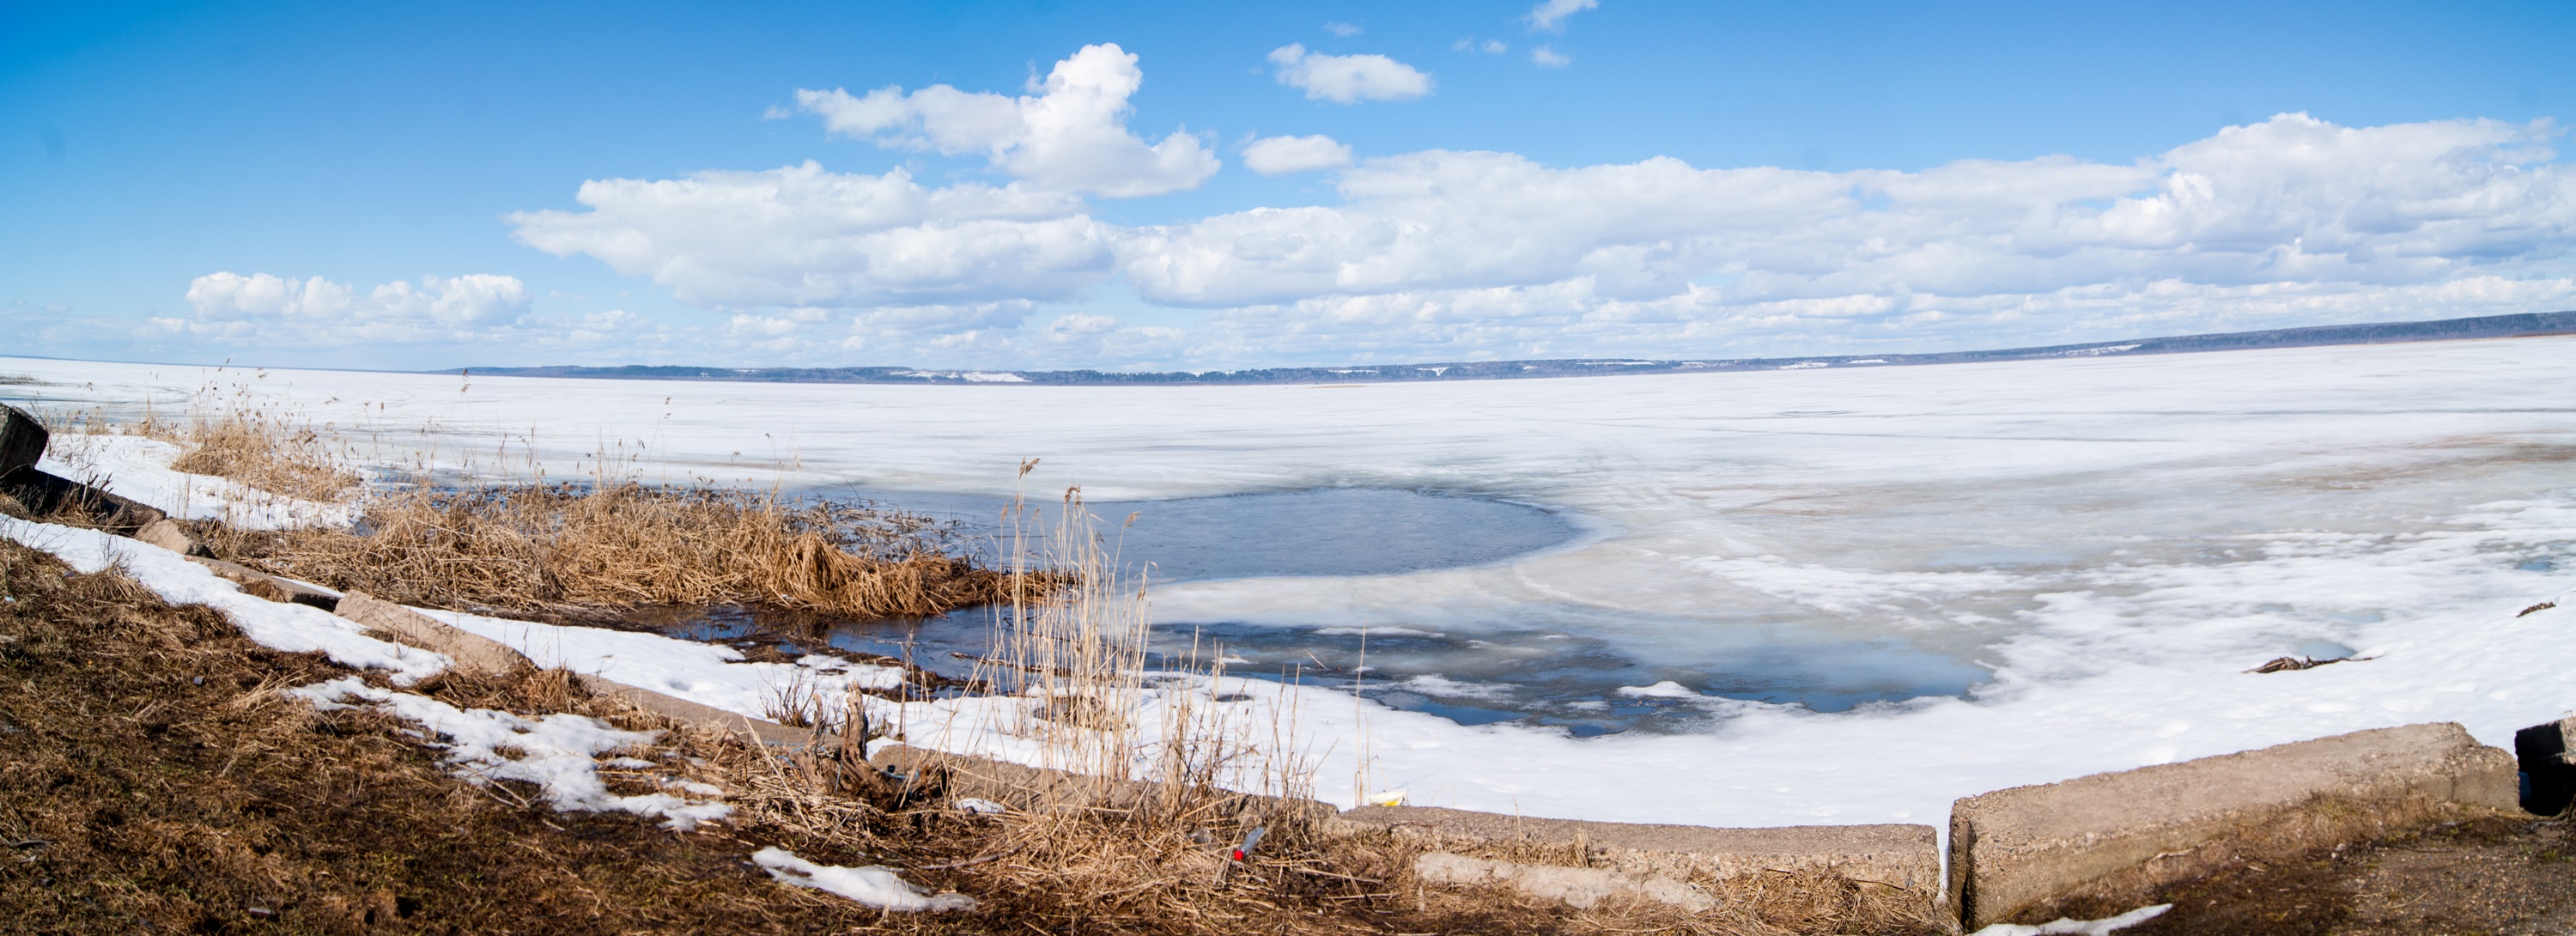 Озеро Галича зимой